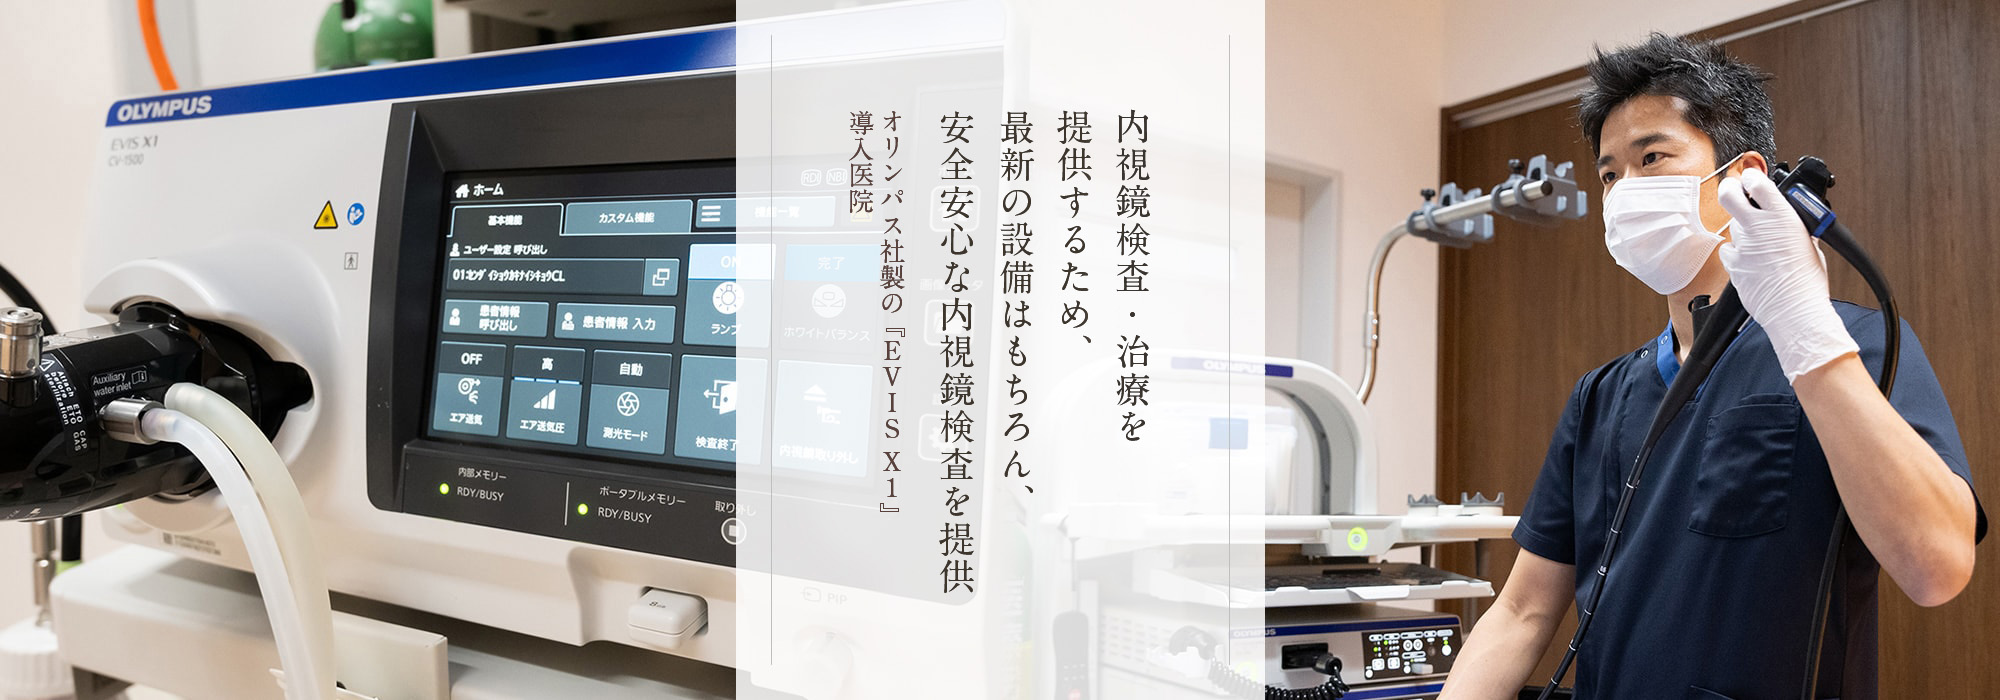 東北地方で日本トップクラスの最先端内視鏡検査・治療を提供するため、最新の設備はもちろん、安全安心な内視鏡検査を提供